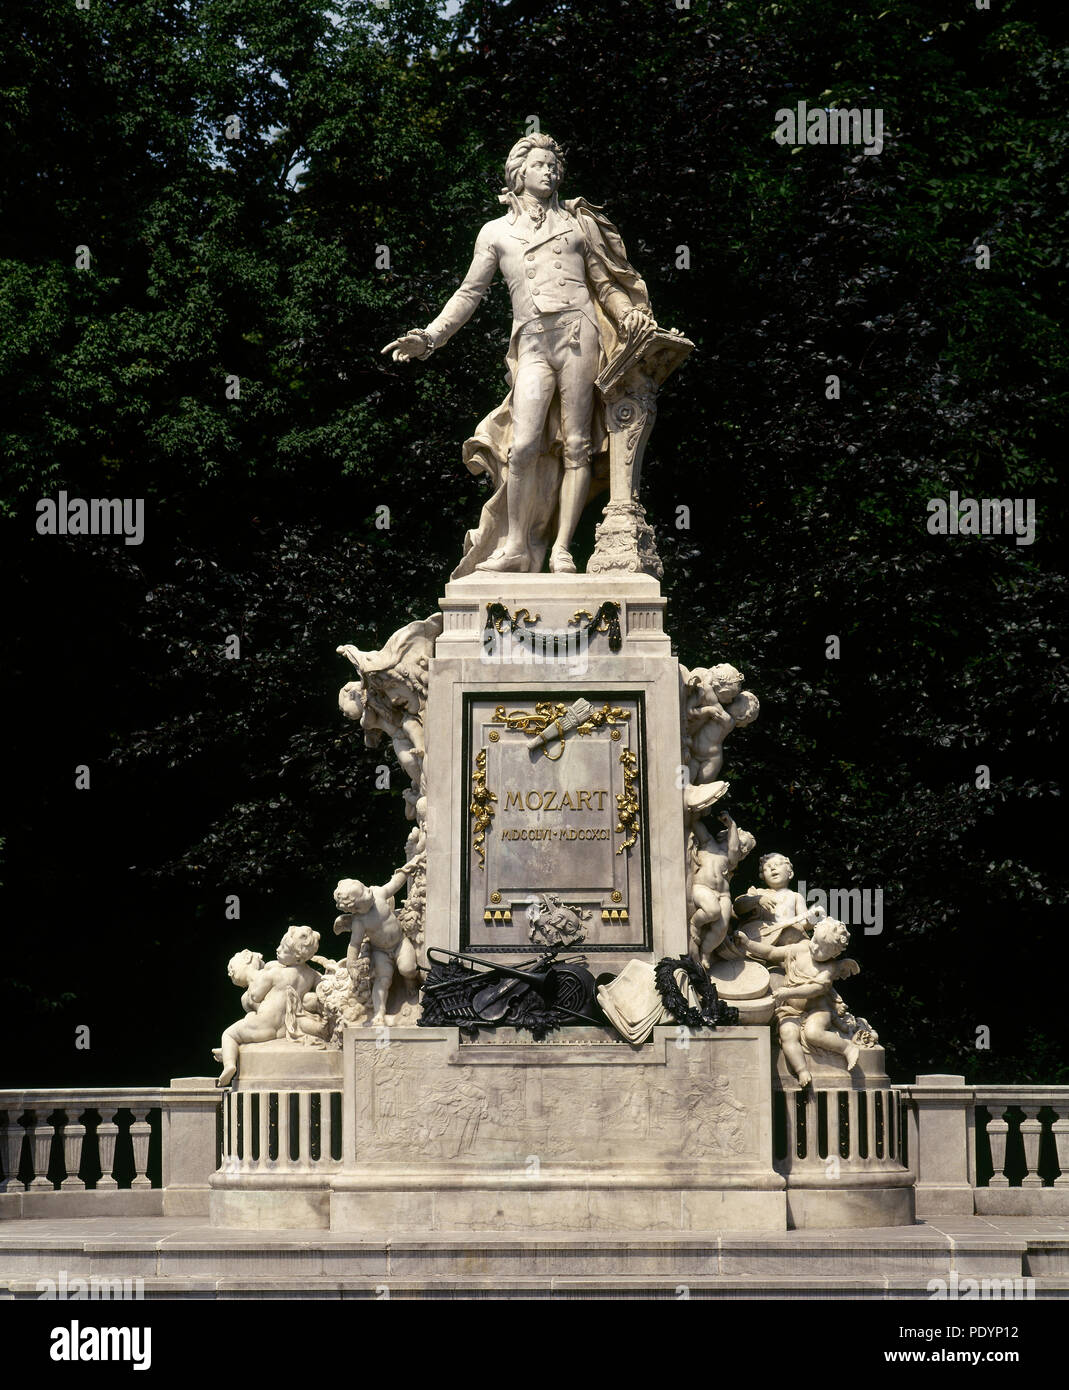 Wolfgang Amadeus Mozart (1756-1791). Österreichischen Komponisten. Denkmal von Viktor Tilgner (1844-1896). Burggarten. Wien, Österreich. Stockfoto